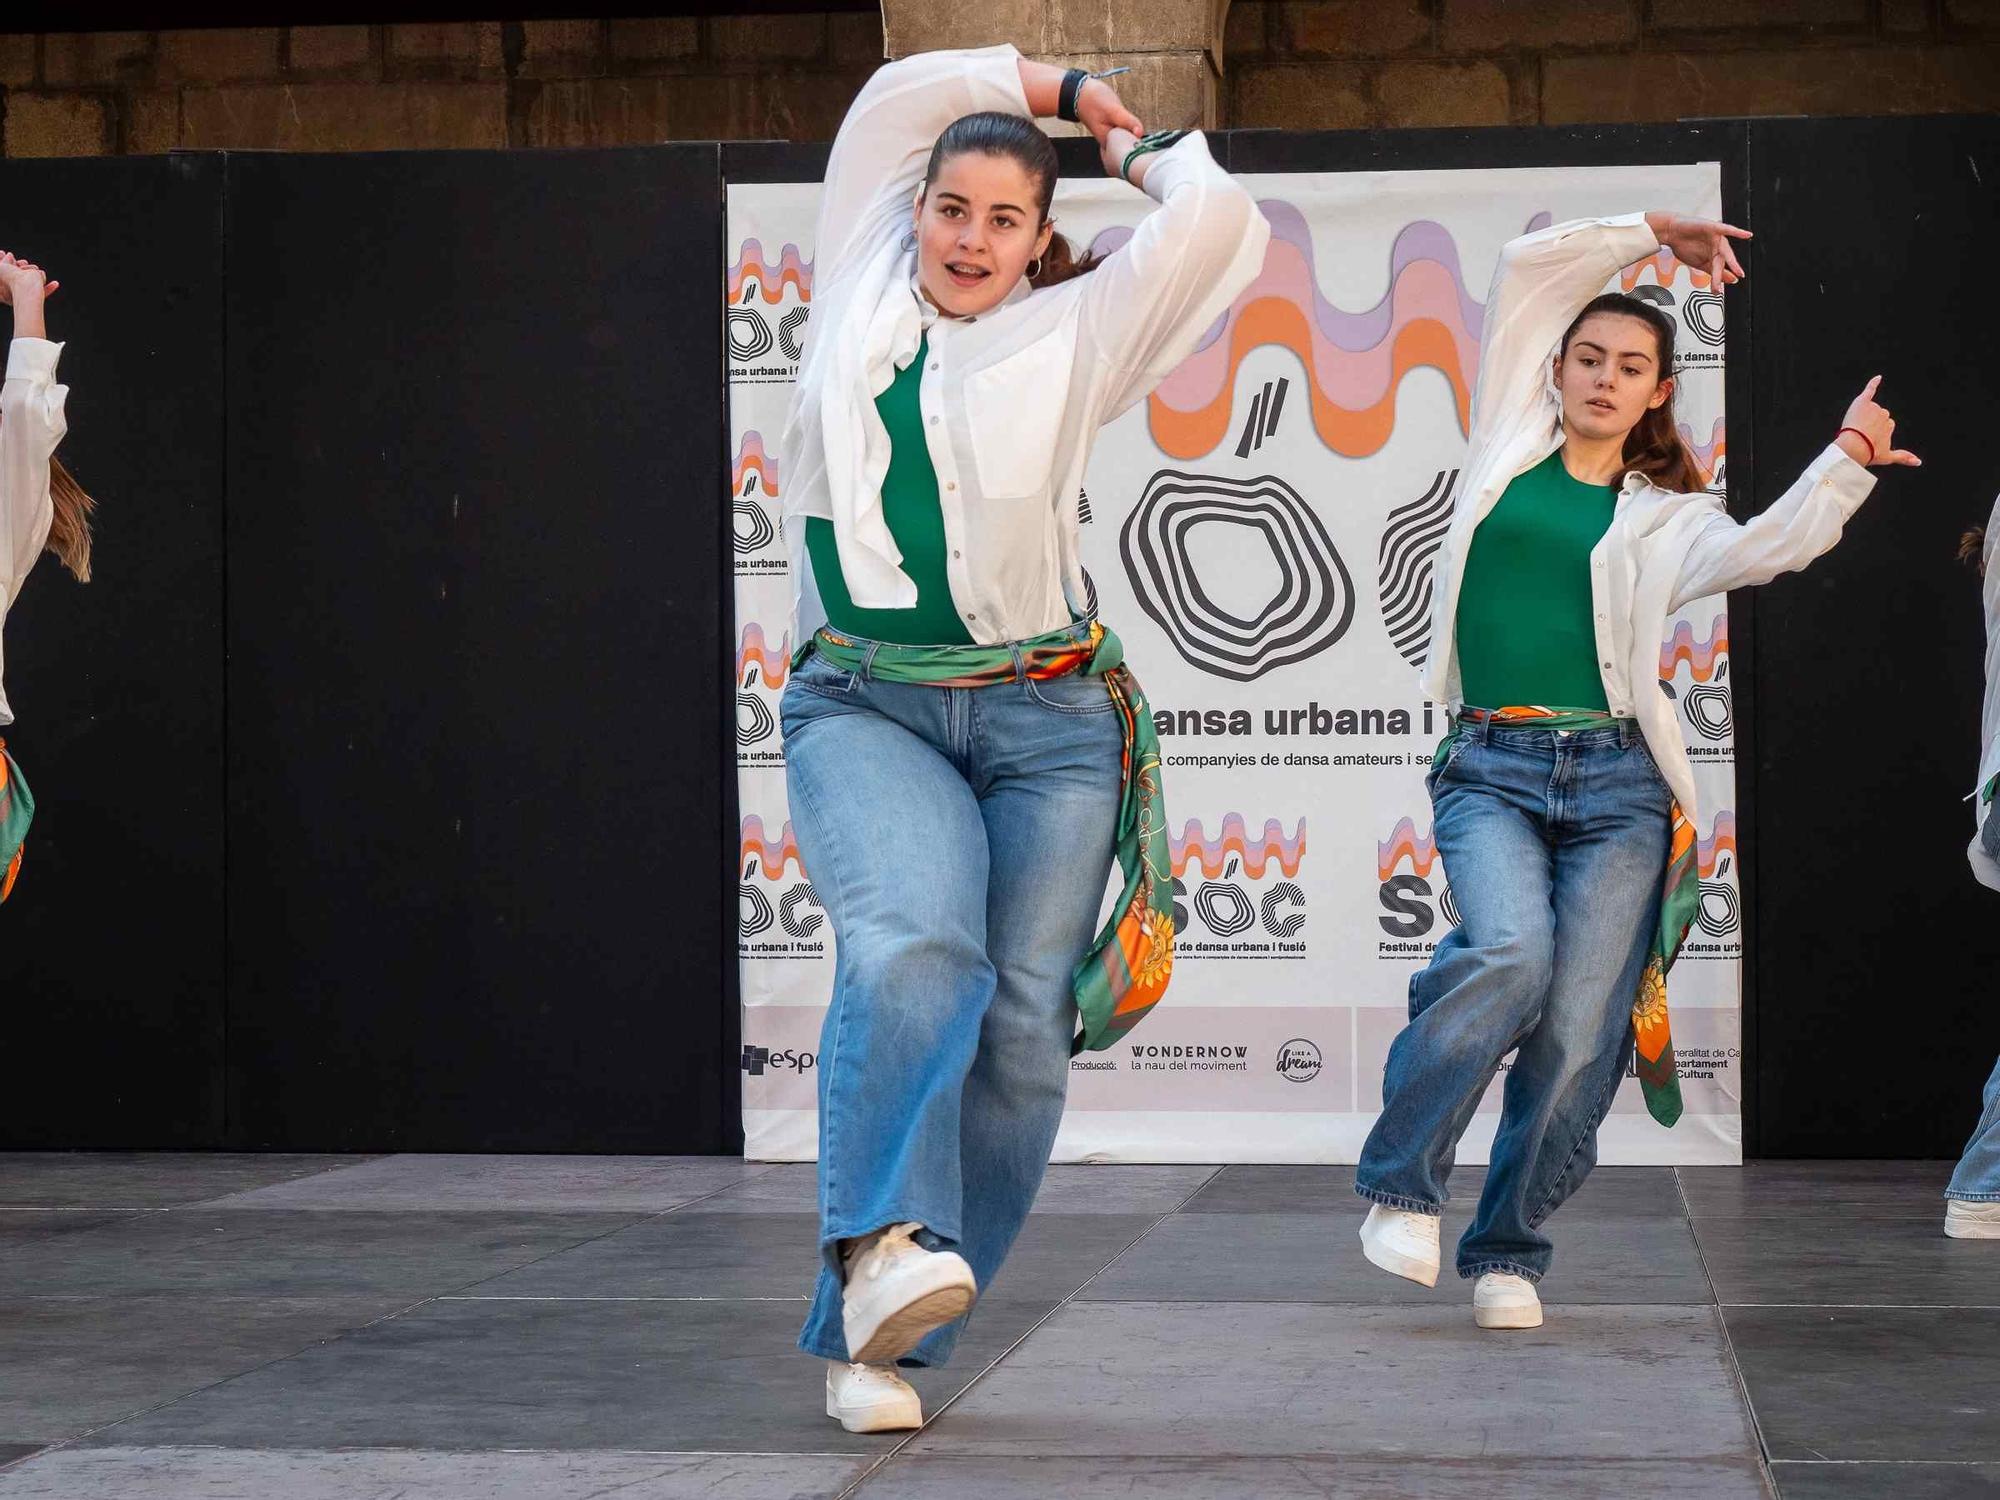 Les imatges del SÓC, el festival de dansa urbana i fusió de Torroella de Montgrí